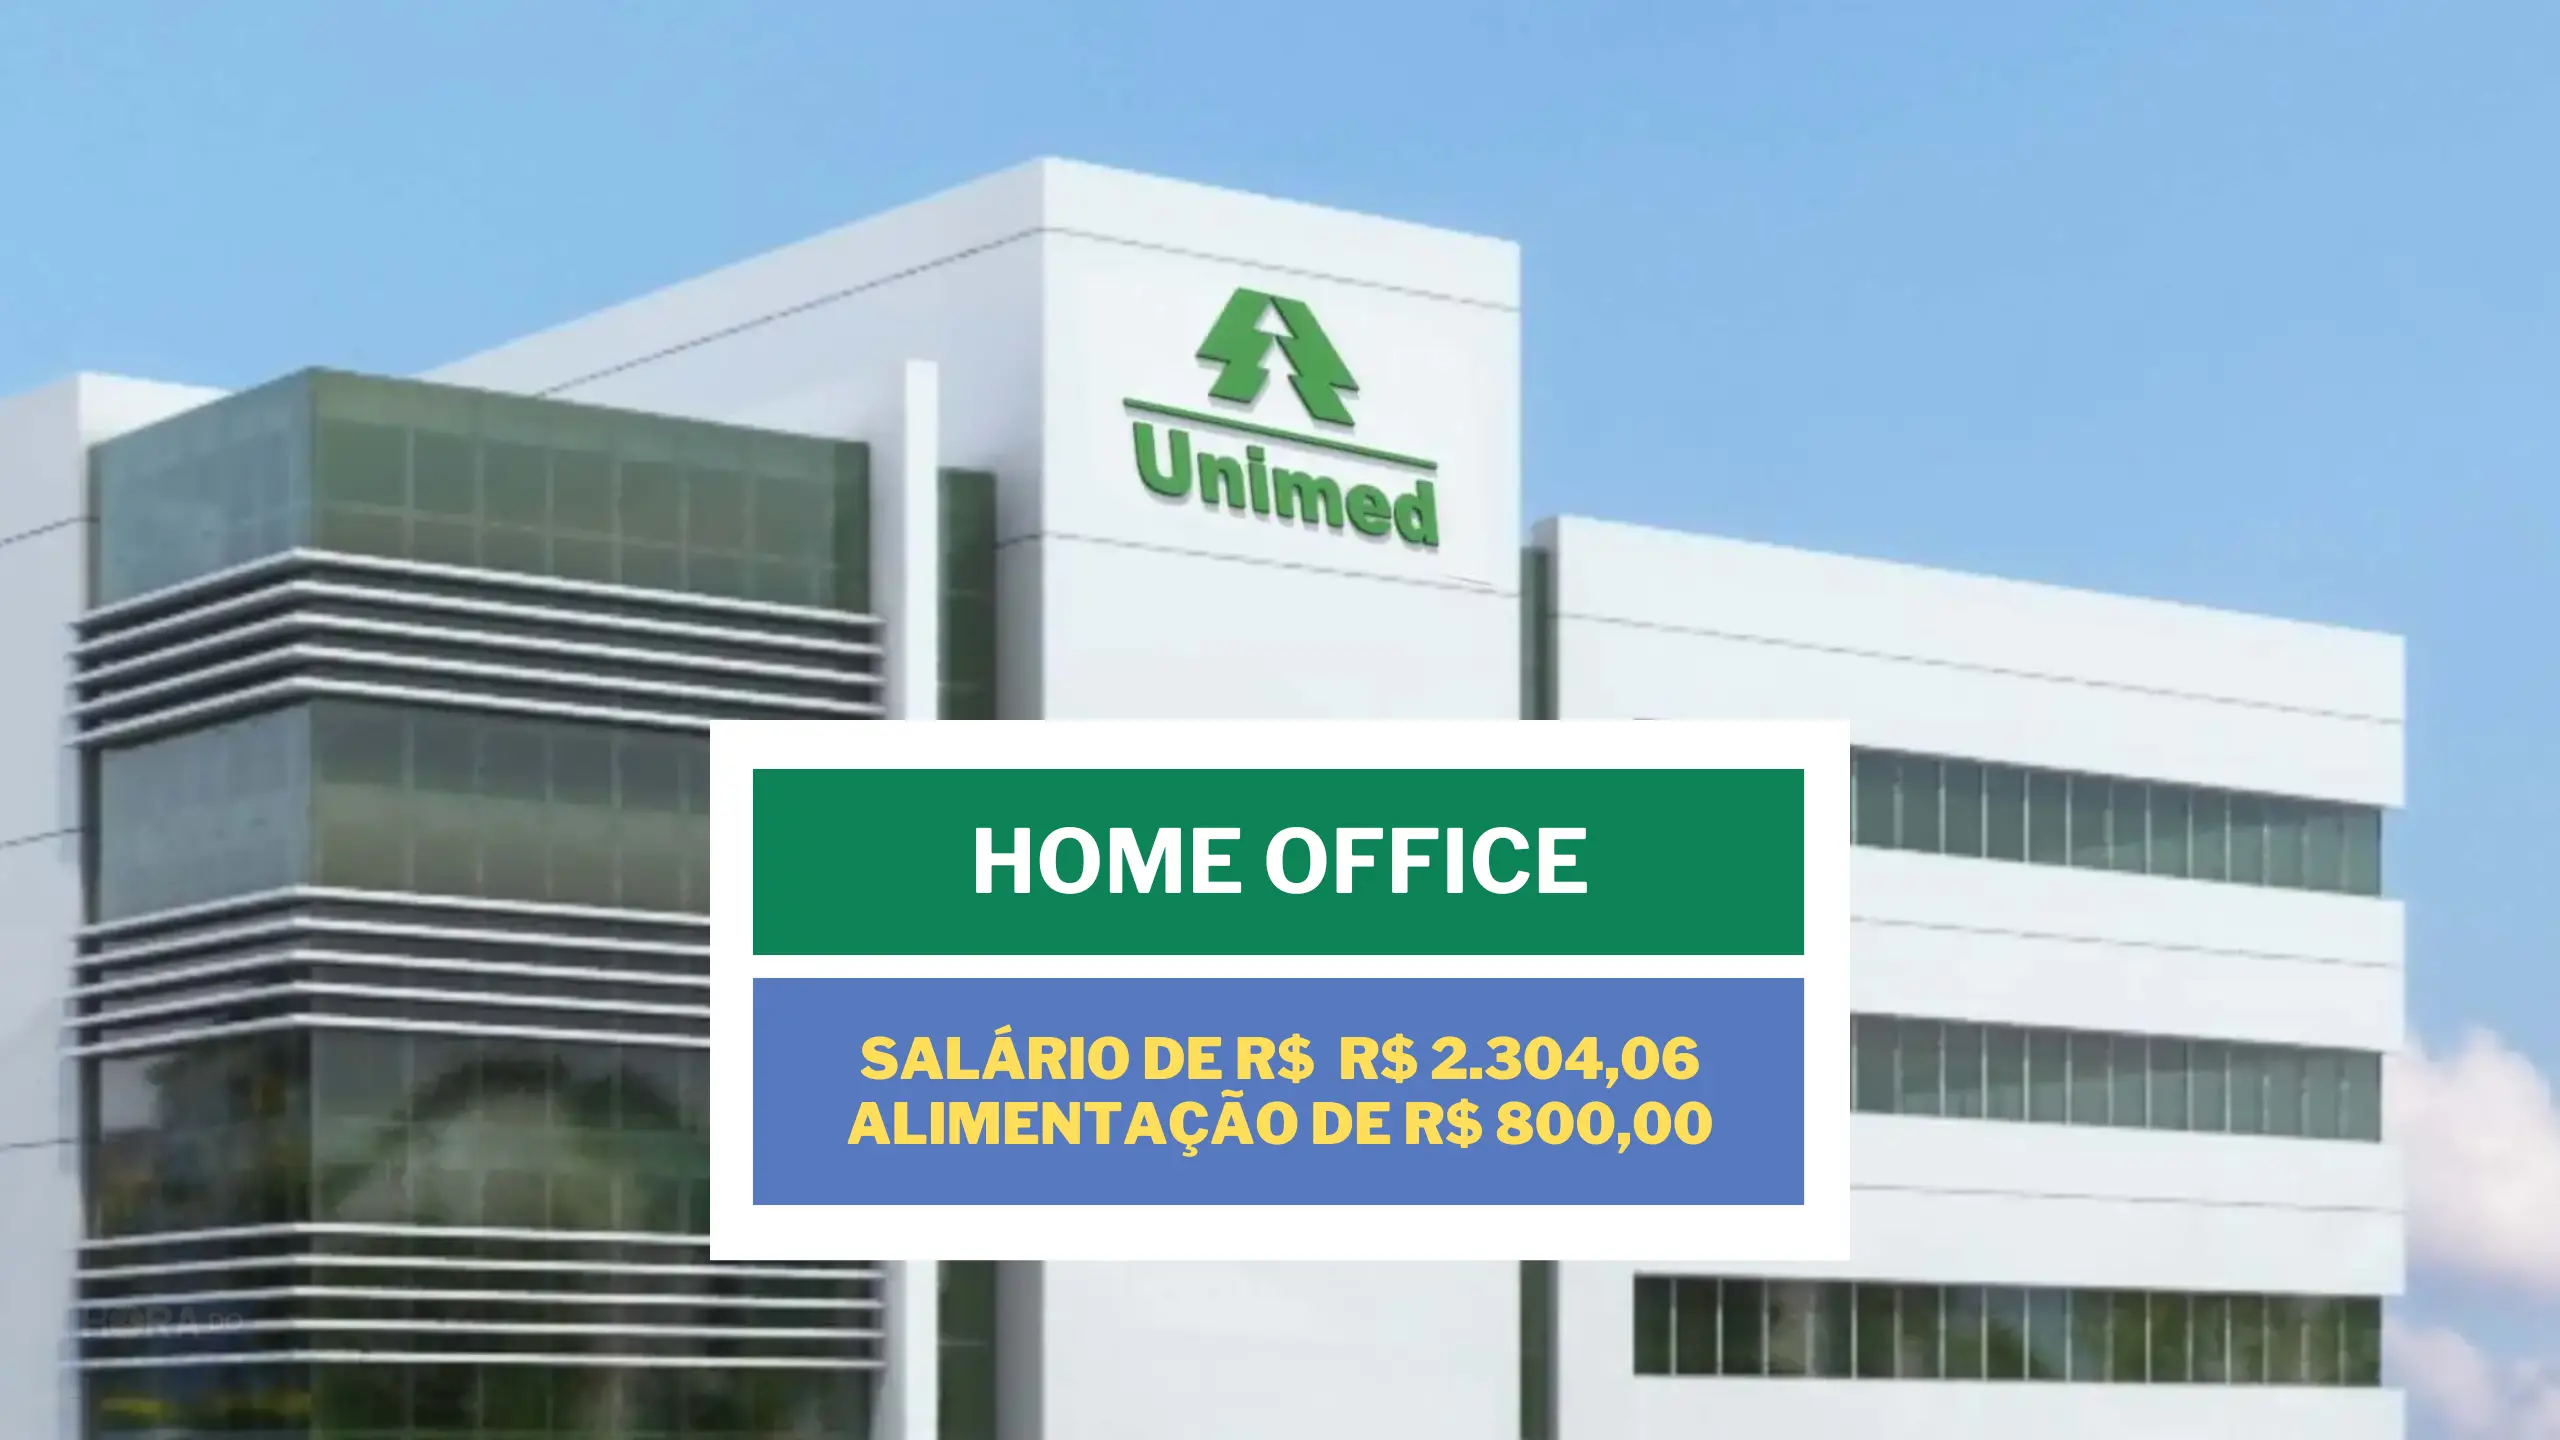 Sem experiência! Unimed abriu vaga HOME OFFICE com salário de R$ 2.304,06 e Alimentação de R$ 800,00 para Sales Development